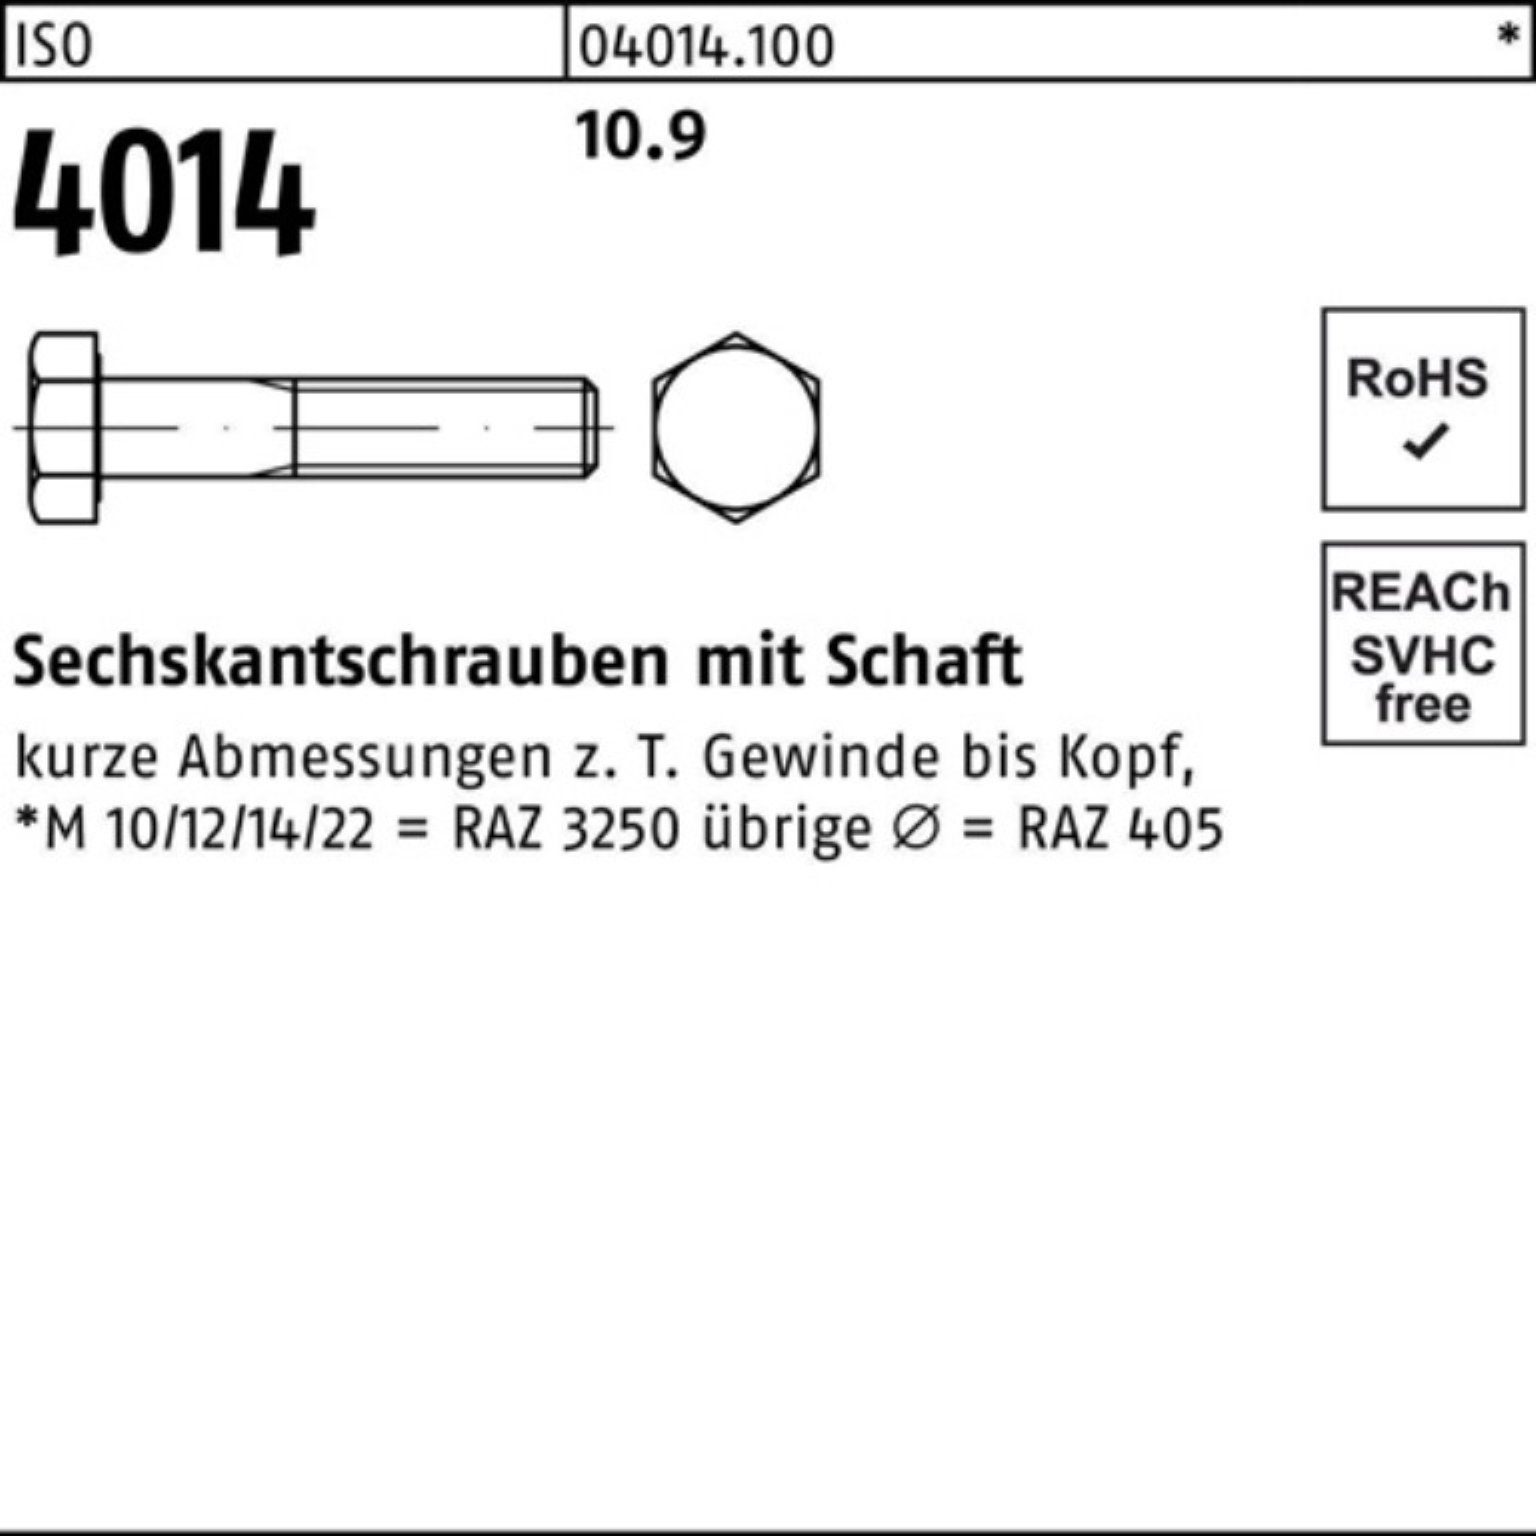 M16x ISO 340 Stück 100er 1 4014 Schaft 10.9 Bufab IS Pack Sechskantschraube Sechskantschraube